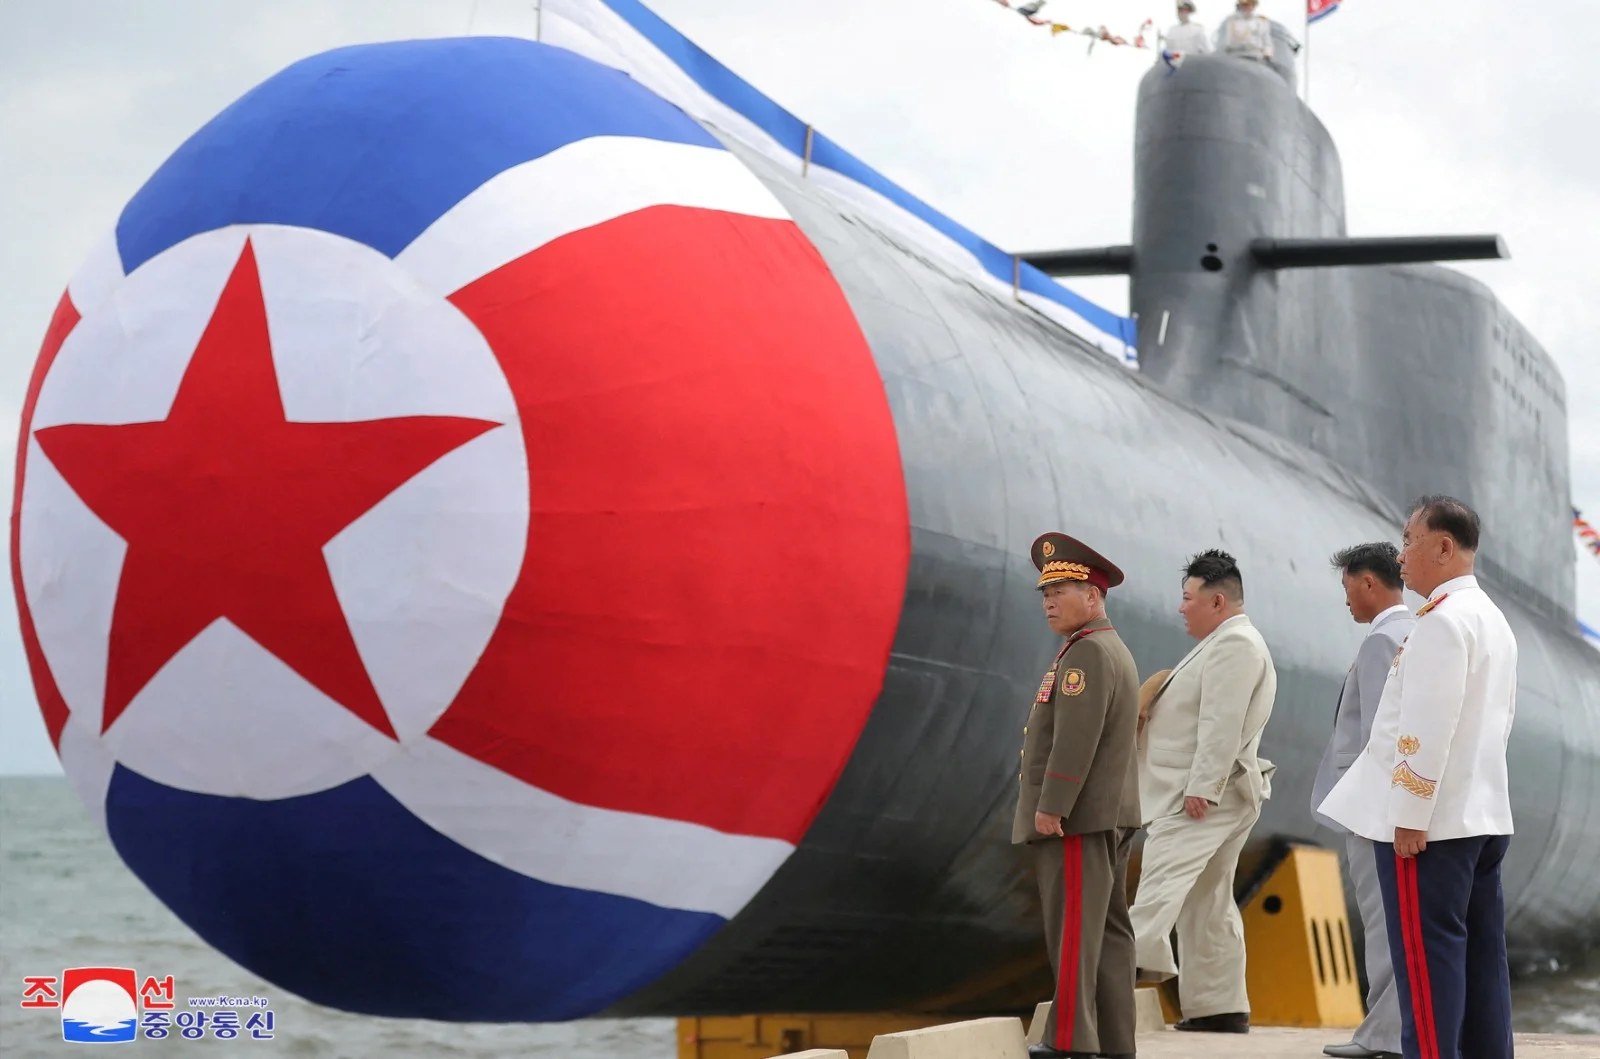 קים ג'ונג און בטקס שיגור של צוללת תקיפה גרעינית טקטית חדשה בצפון קוריאה